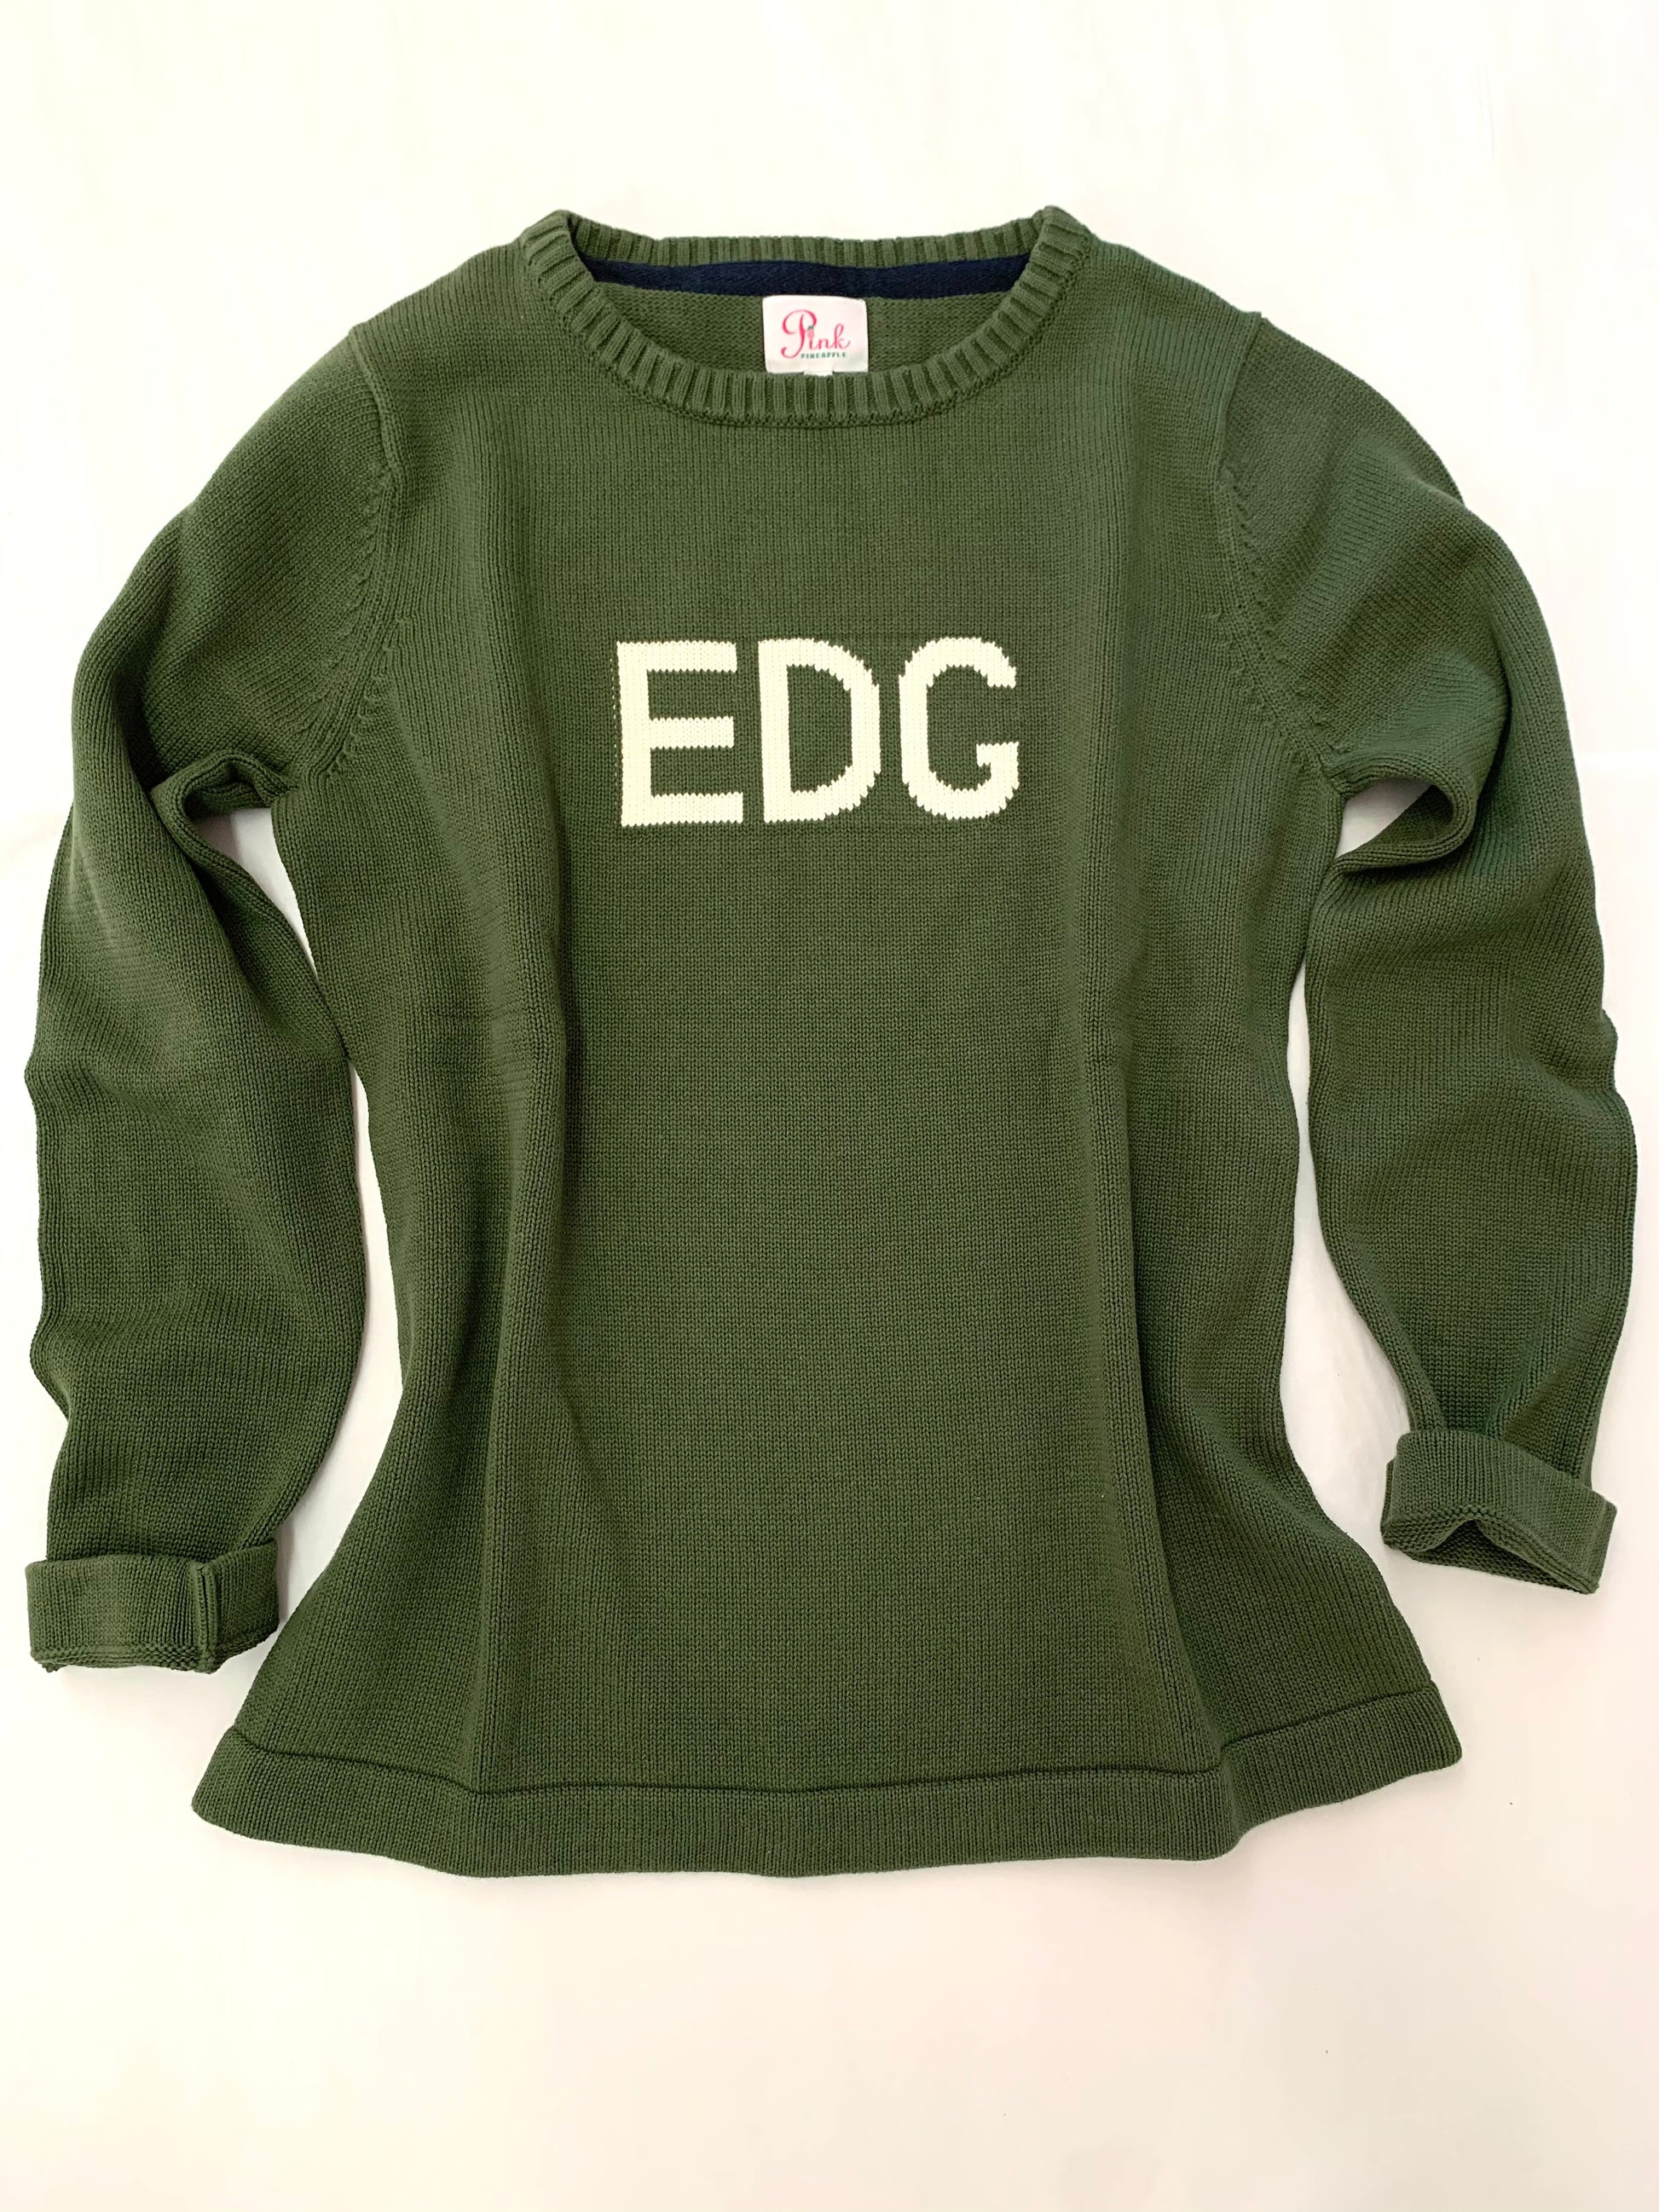 EDG Edgartown New Femenine cut sweater